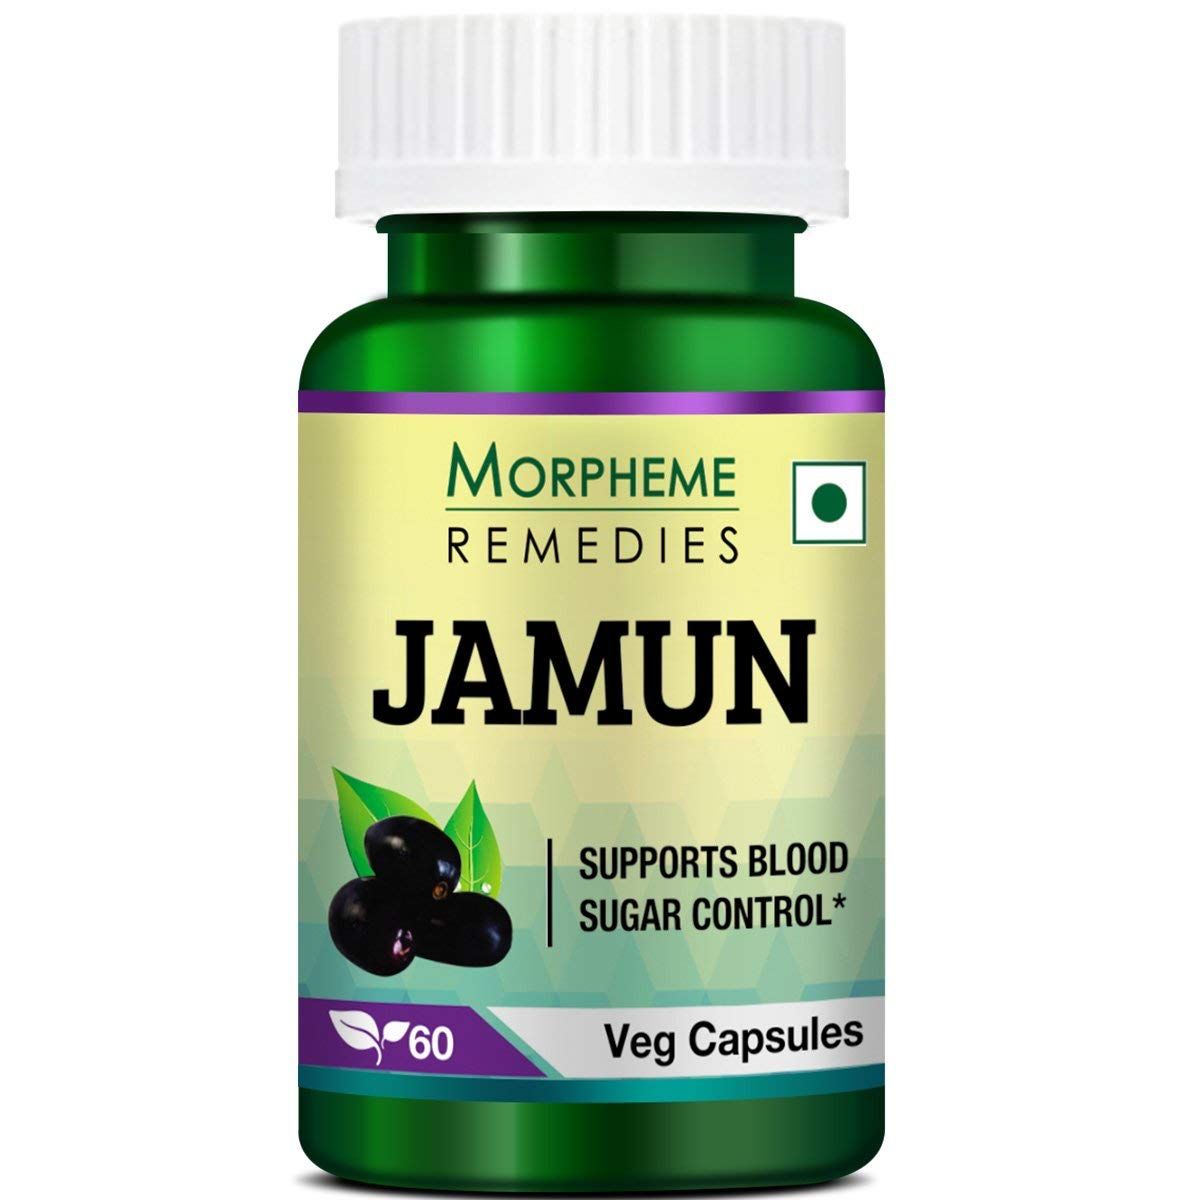 Morpheme Remedies Jamun Image